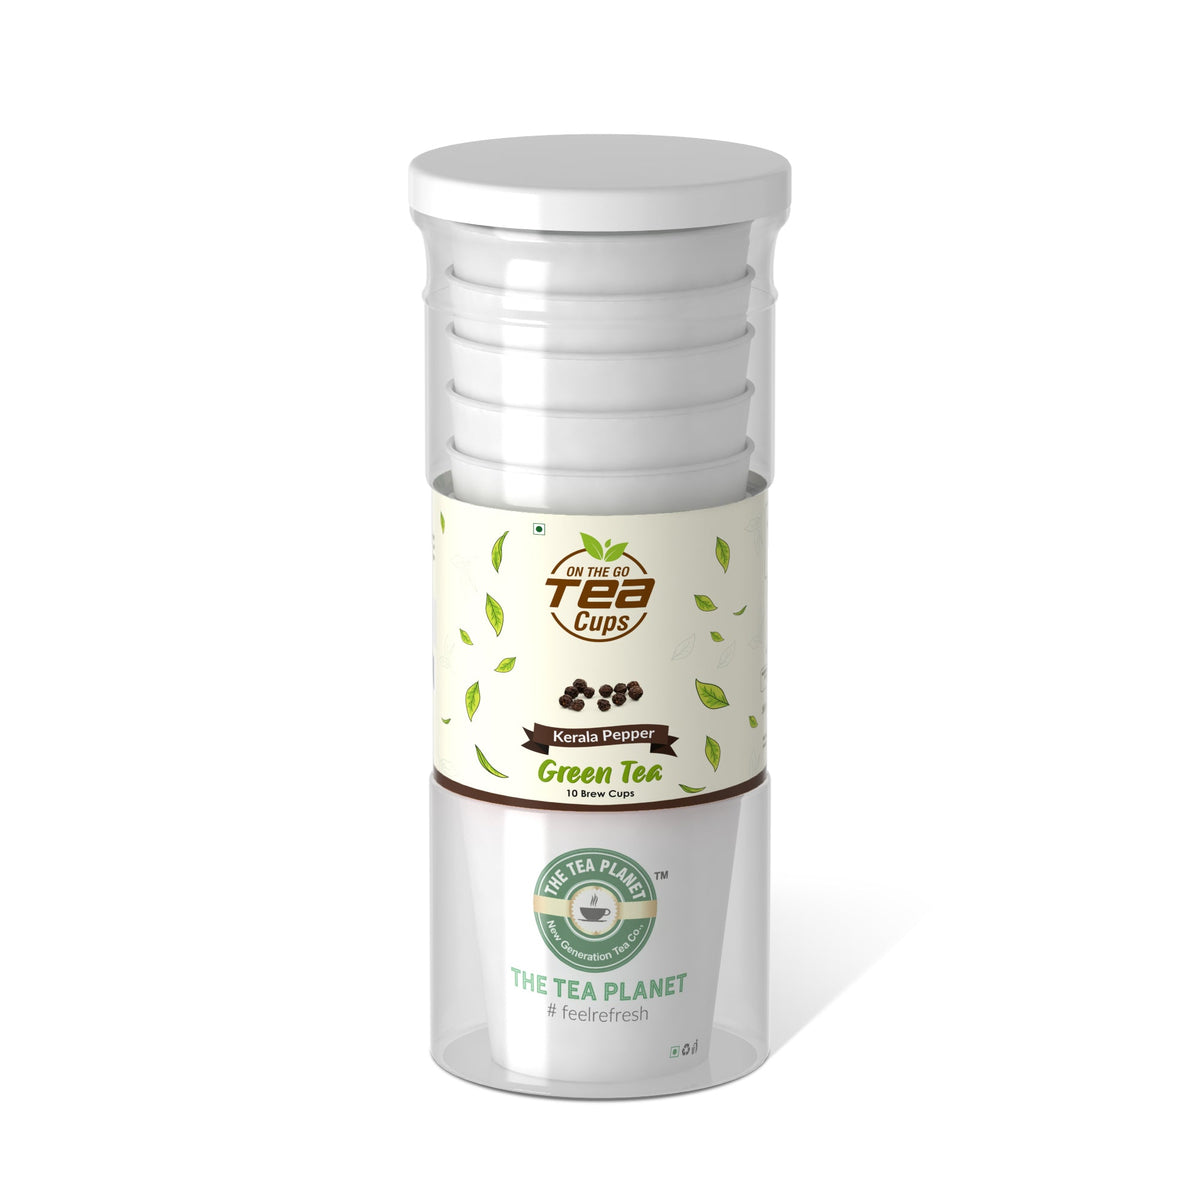 Kerala Pepper Instant Green Tea Brew Cup